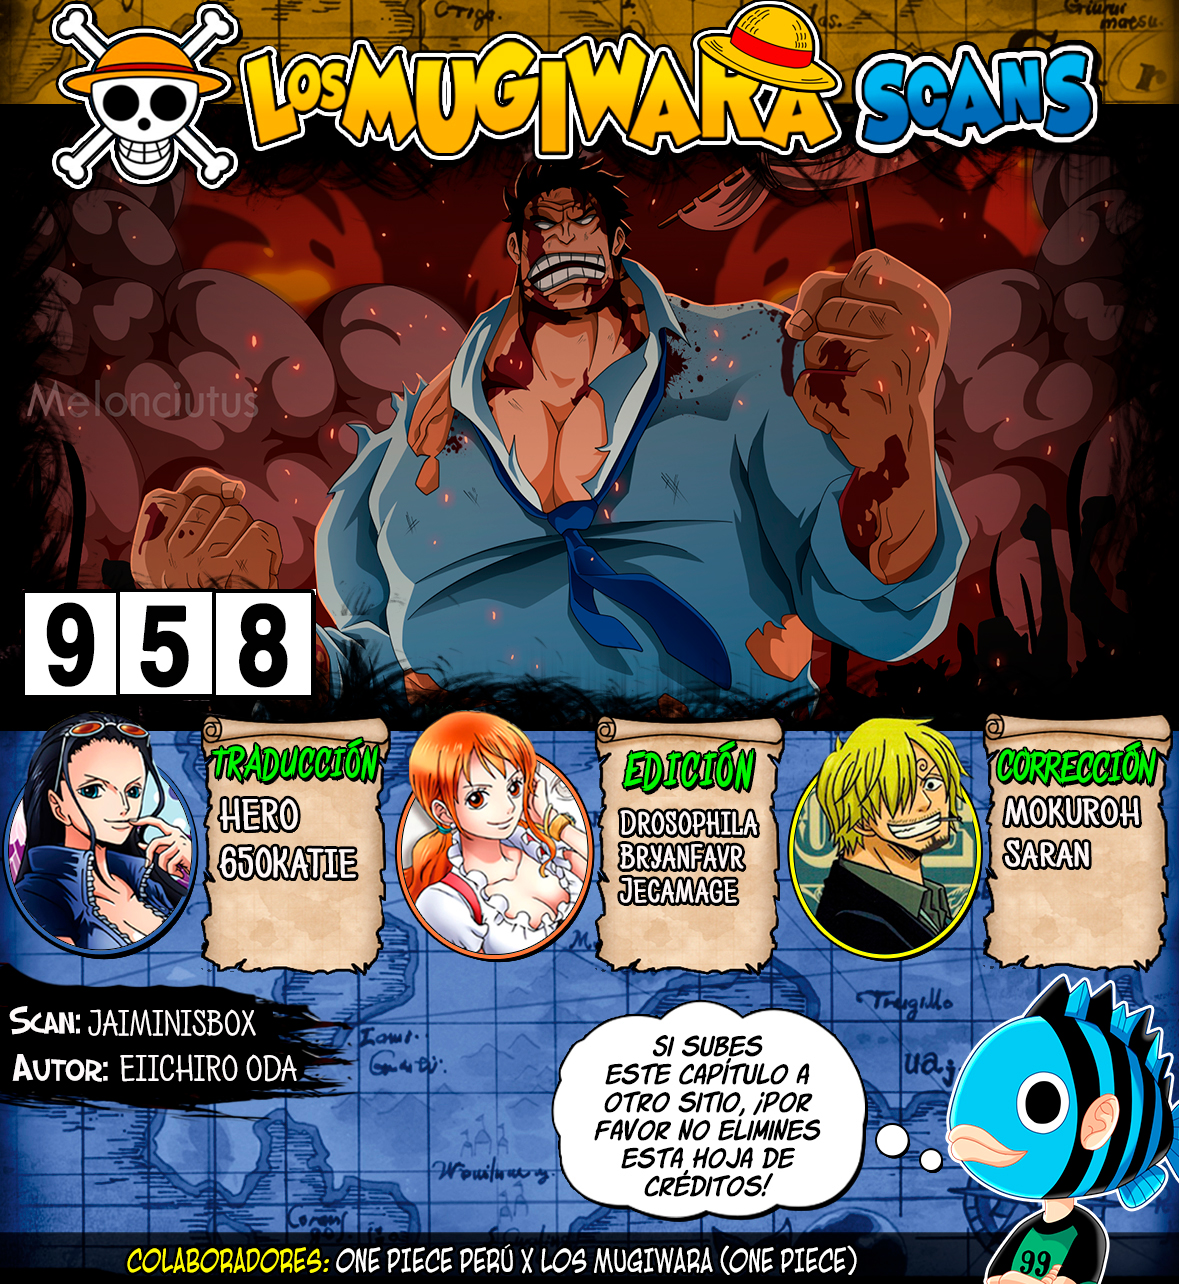 One Piece Manga 958 Espanol Mugiwara Scans Wocial Foro Anime Manga Comics Videojuegos Social